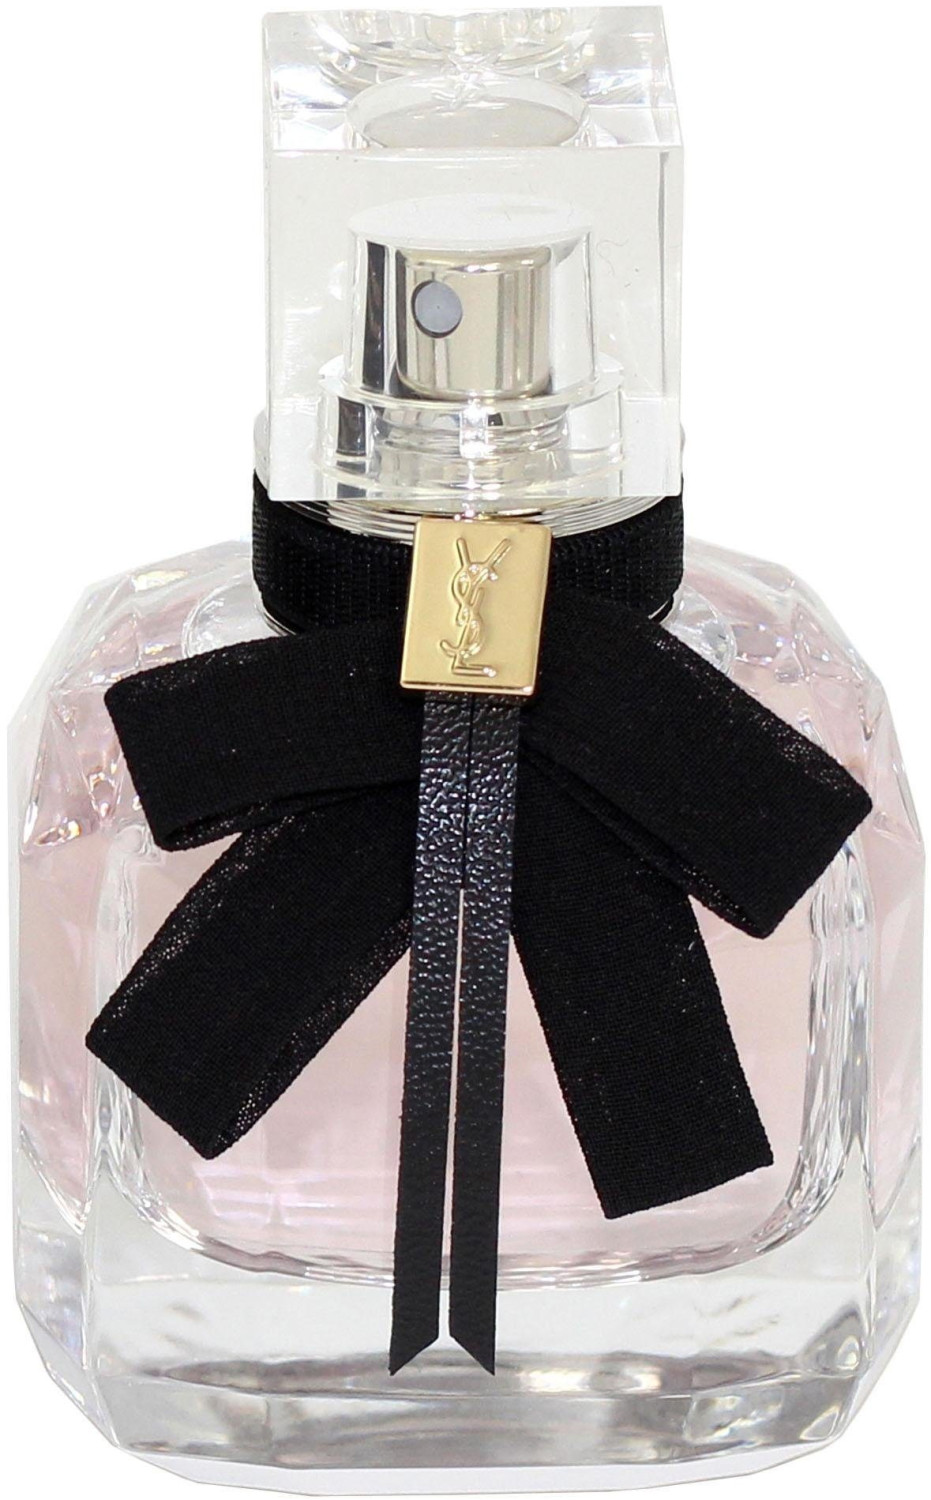 Buy YSL Mon Paris Eau de Parfum (30ml) from £36.82 (Today) – Best Deals